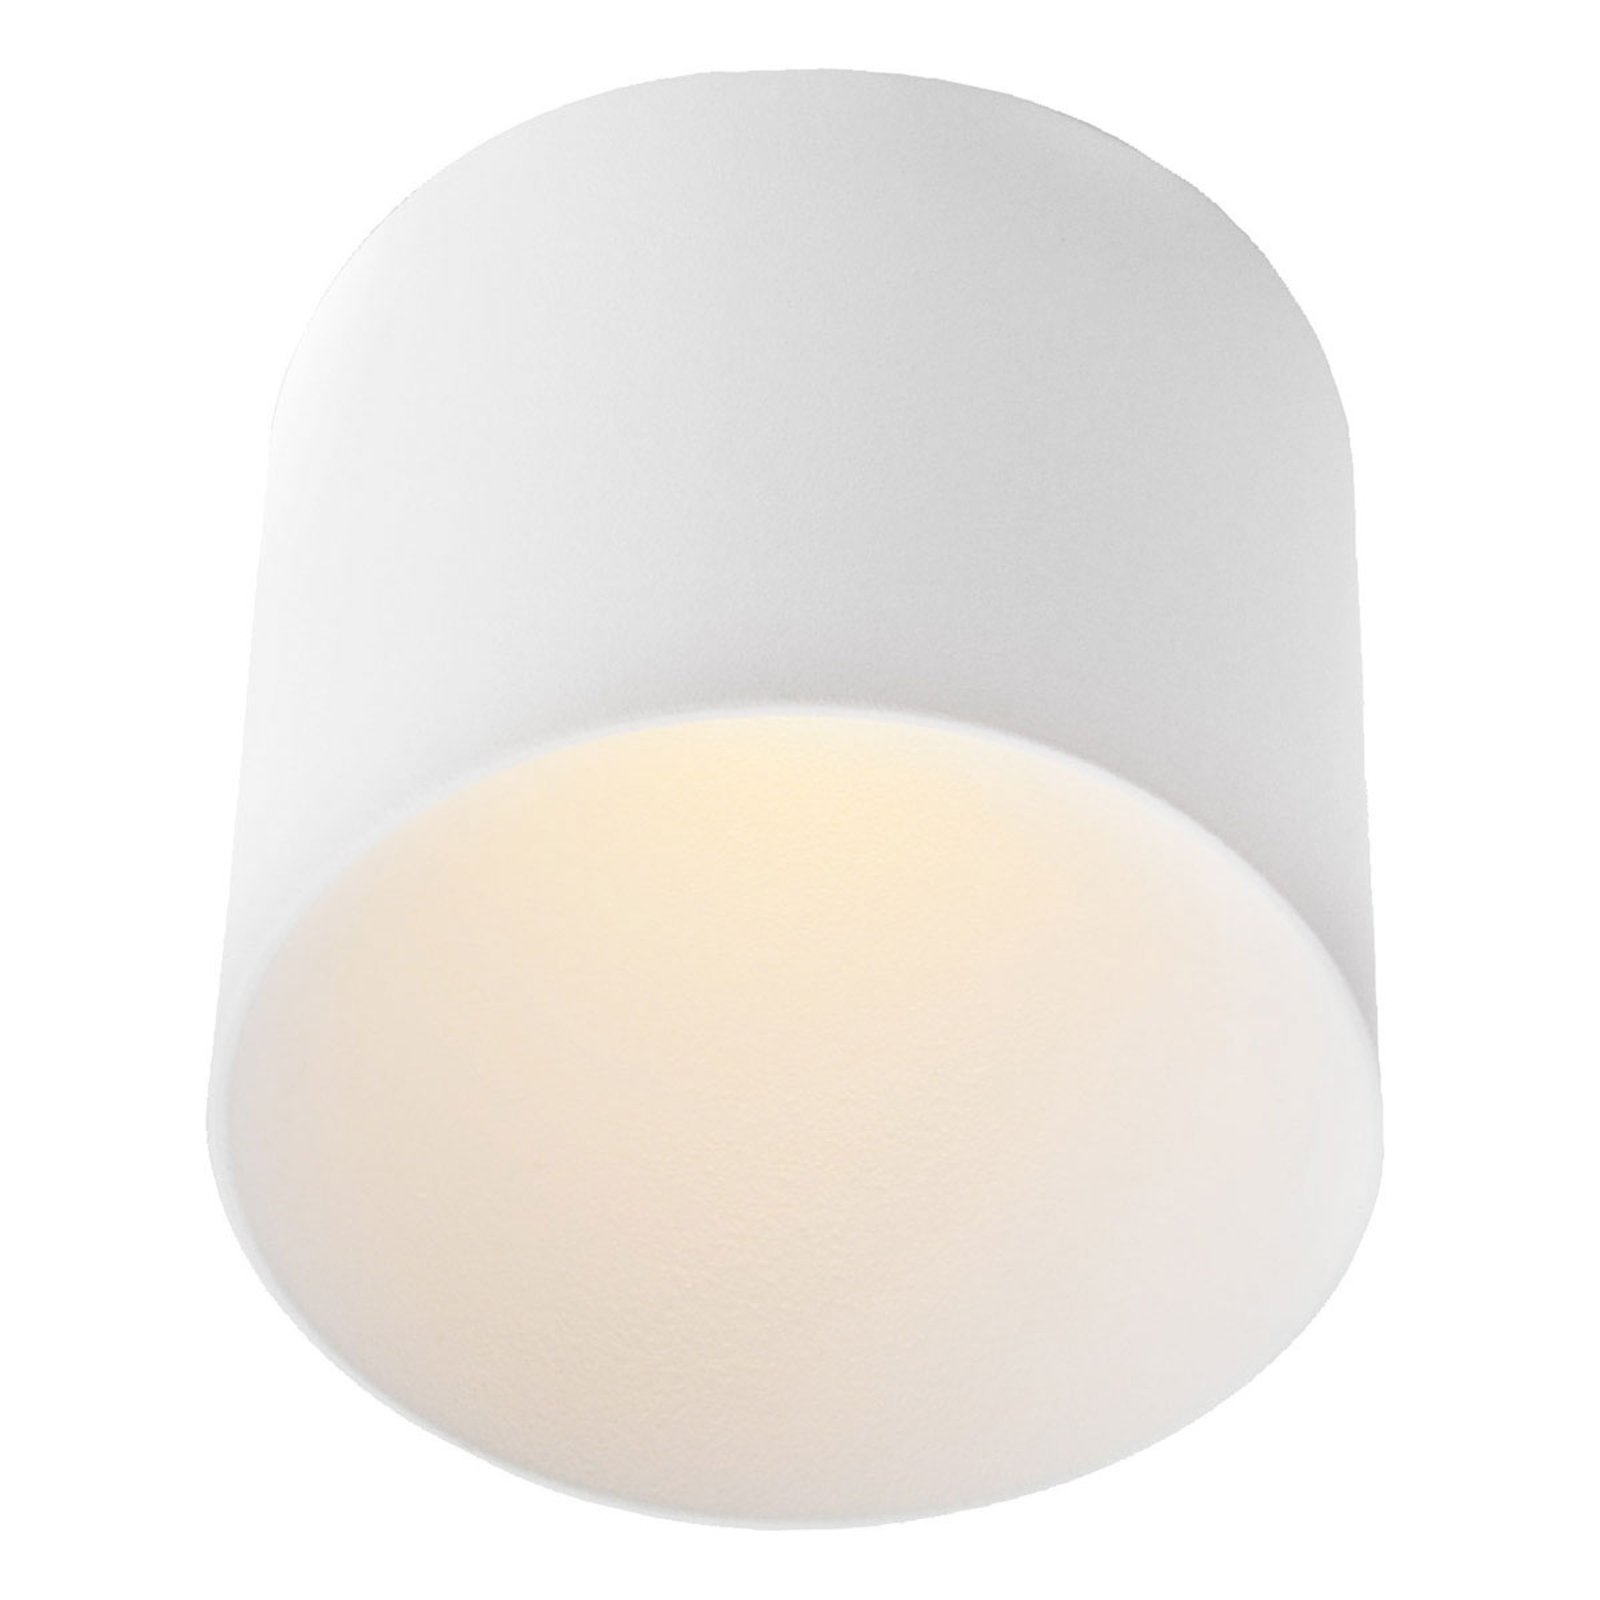 GF design Tubo Einbaulampe IP54 weiß 2.700 K